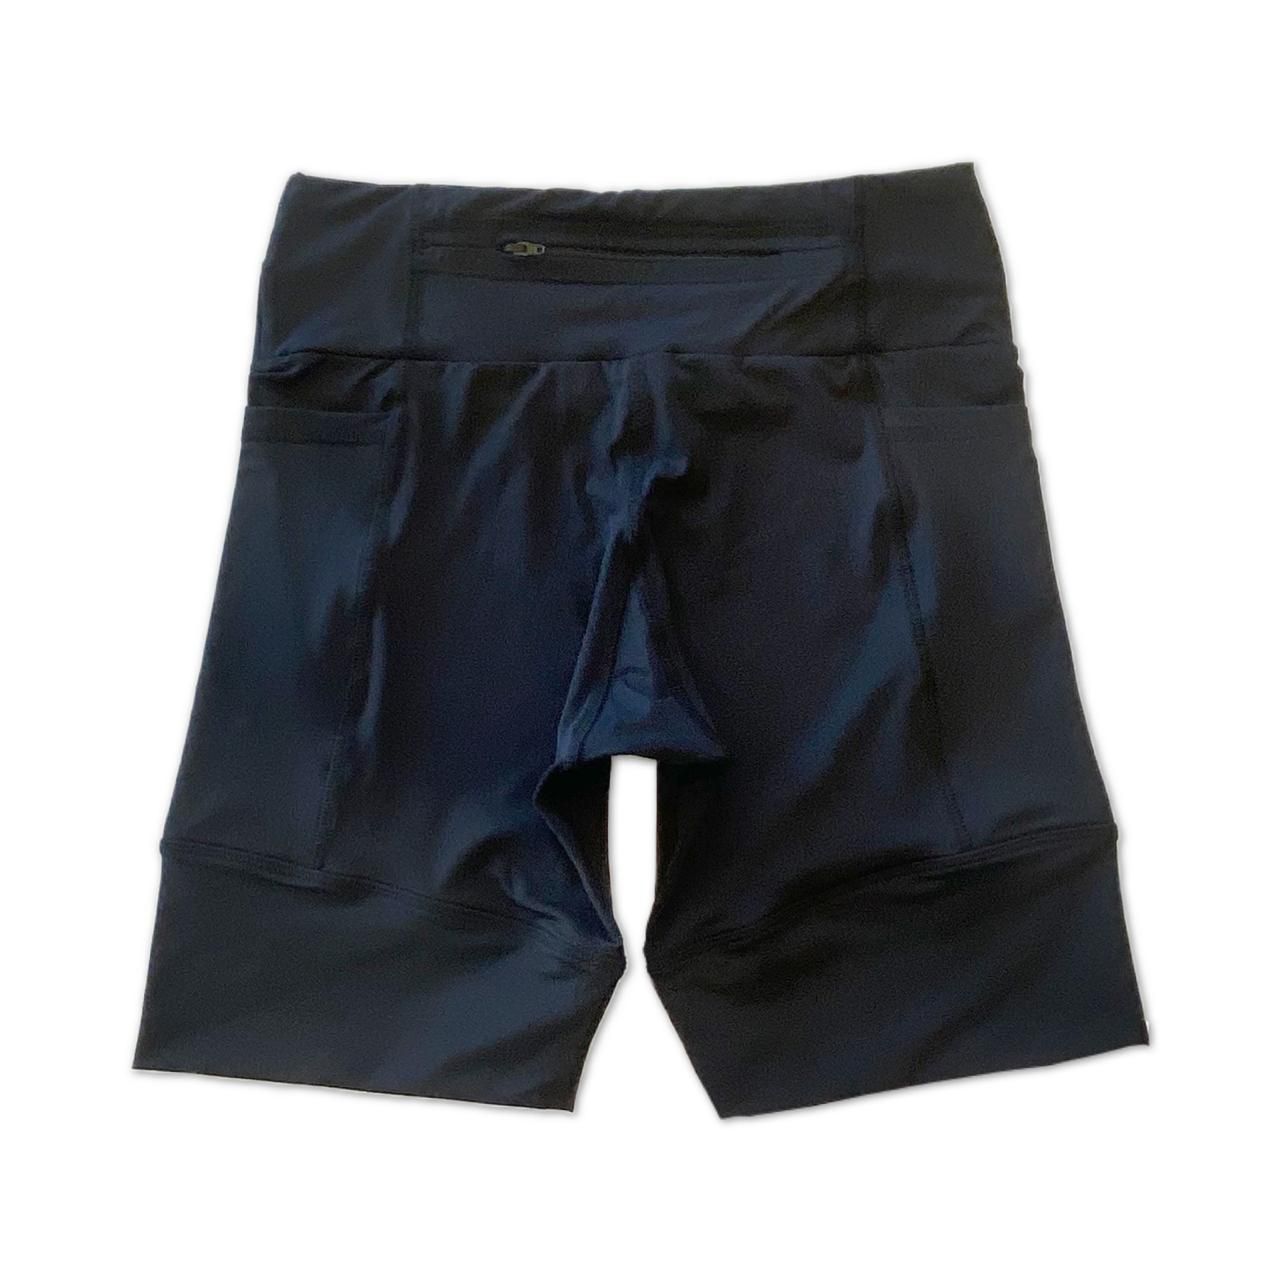 Bermuda de compressão masculina - unissex 1500 bolsos quadrados em sportiva preto